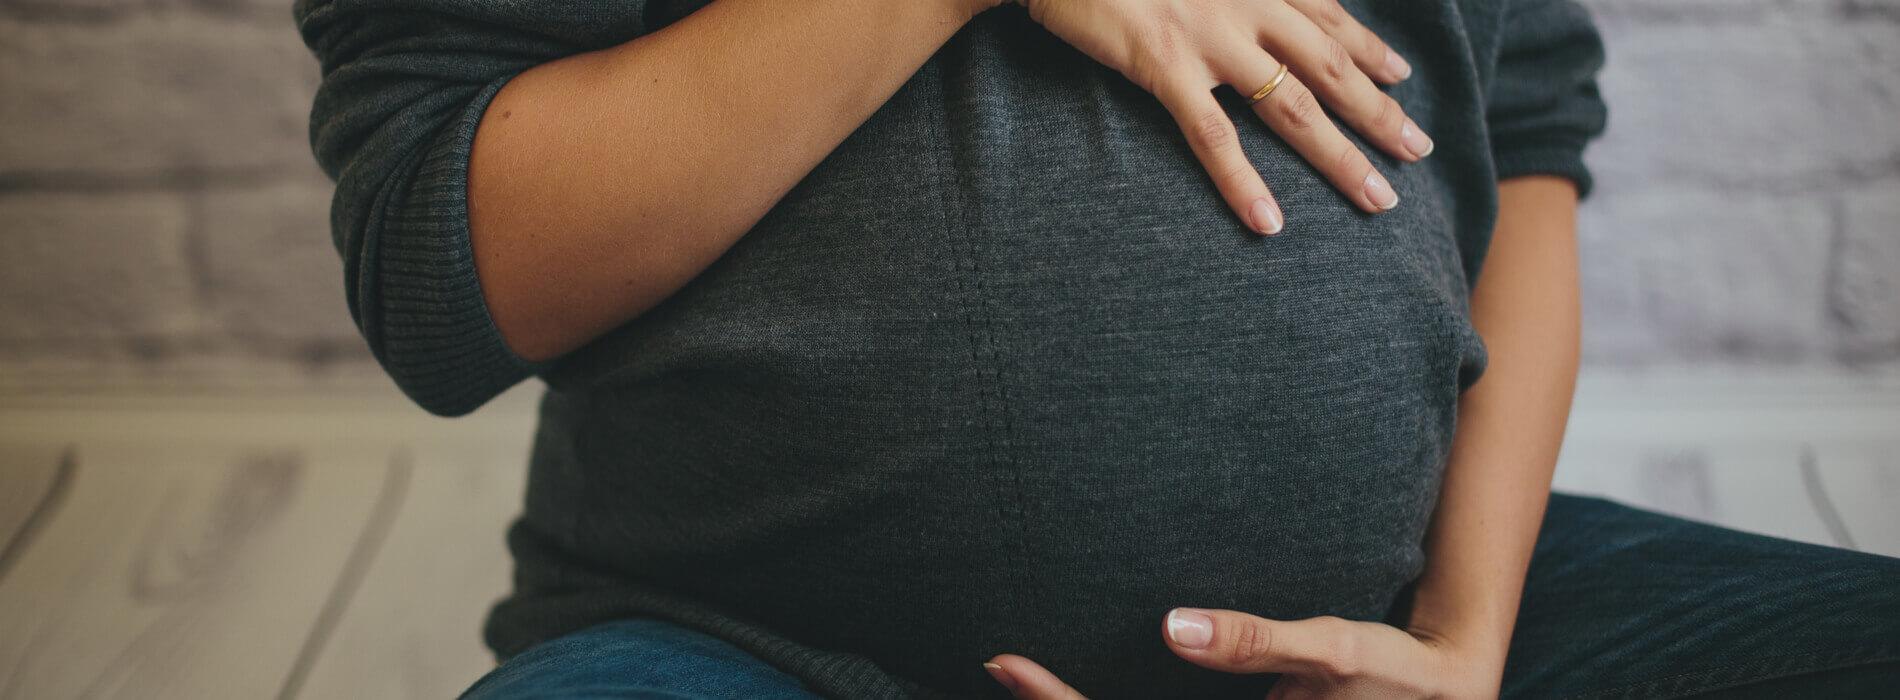 Kiedy wykonać badania prenatalne?